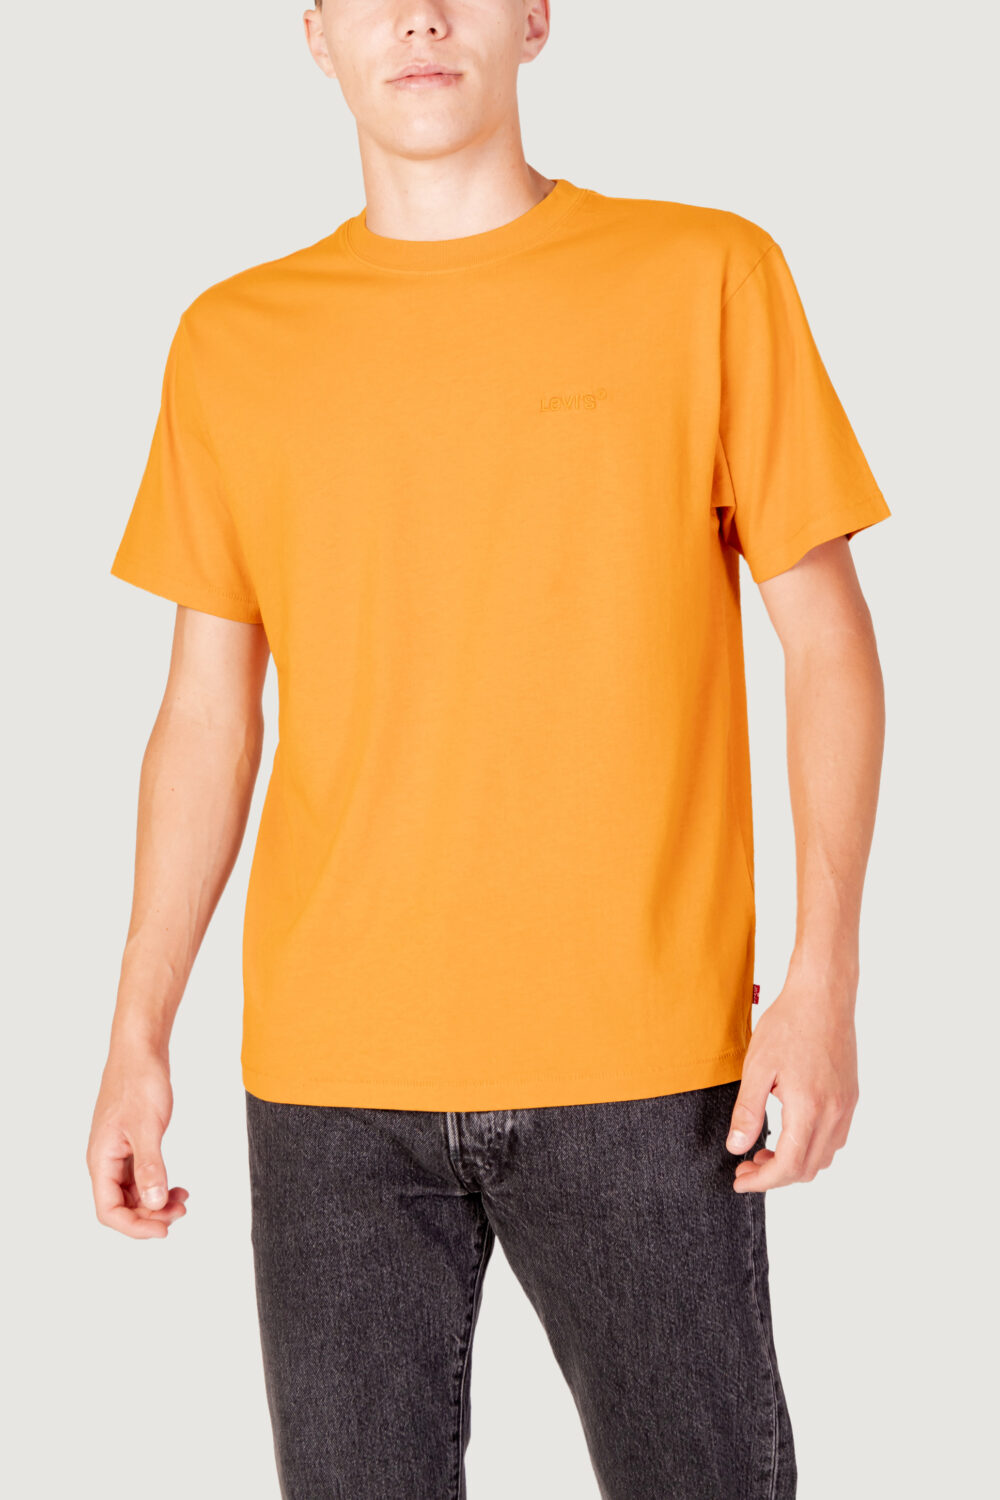 T-shirt Levi's® red tab vintage tee Arancione - Foto 1